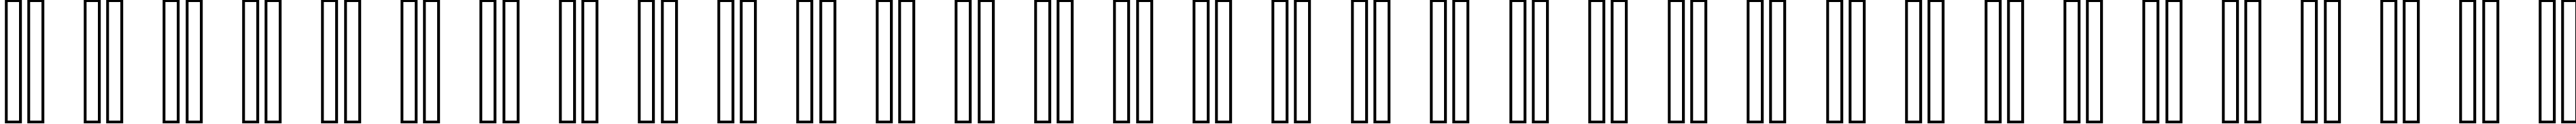 Пример написания русского алфавита шрифтом header 17_67